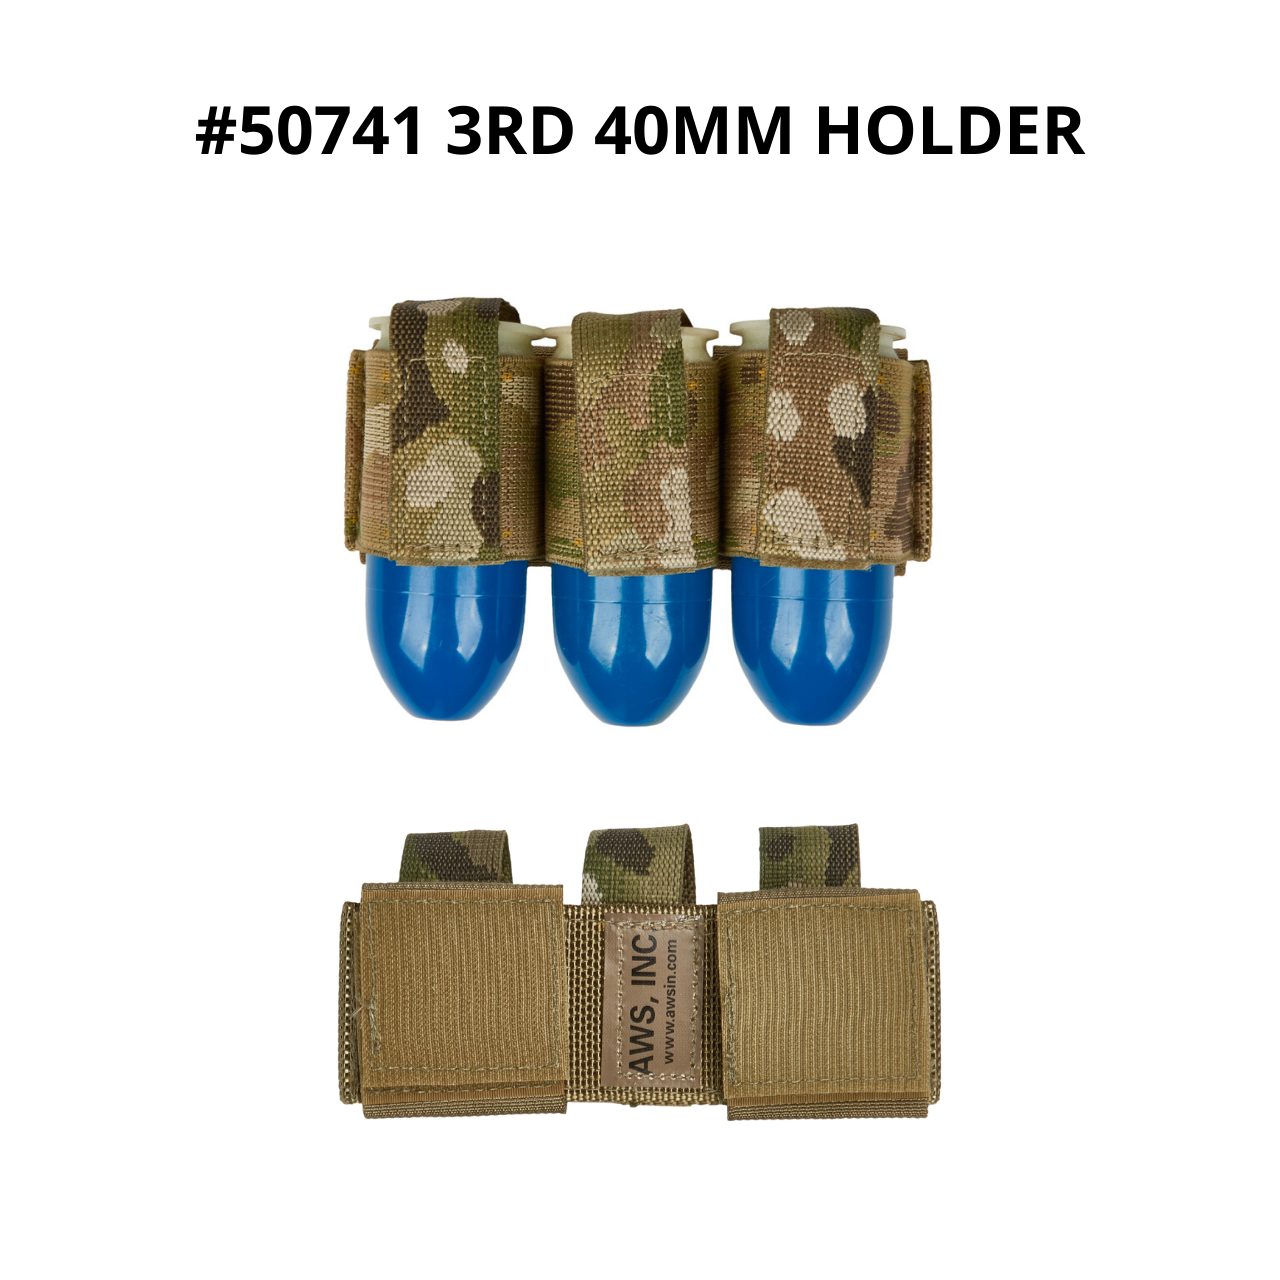 50741 3rnd 40mm shell holder